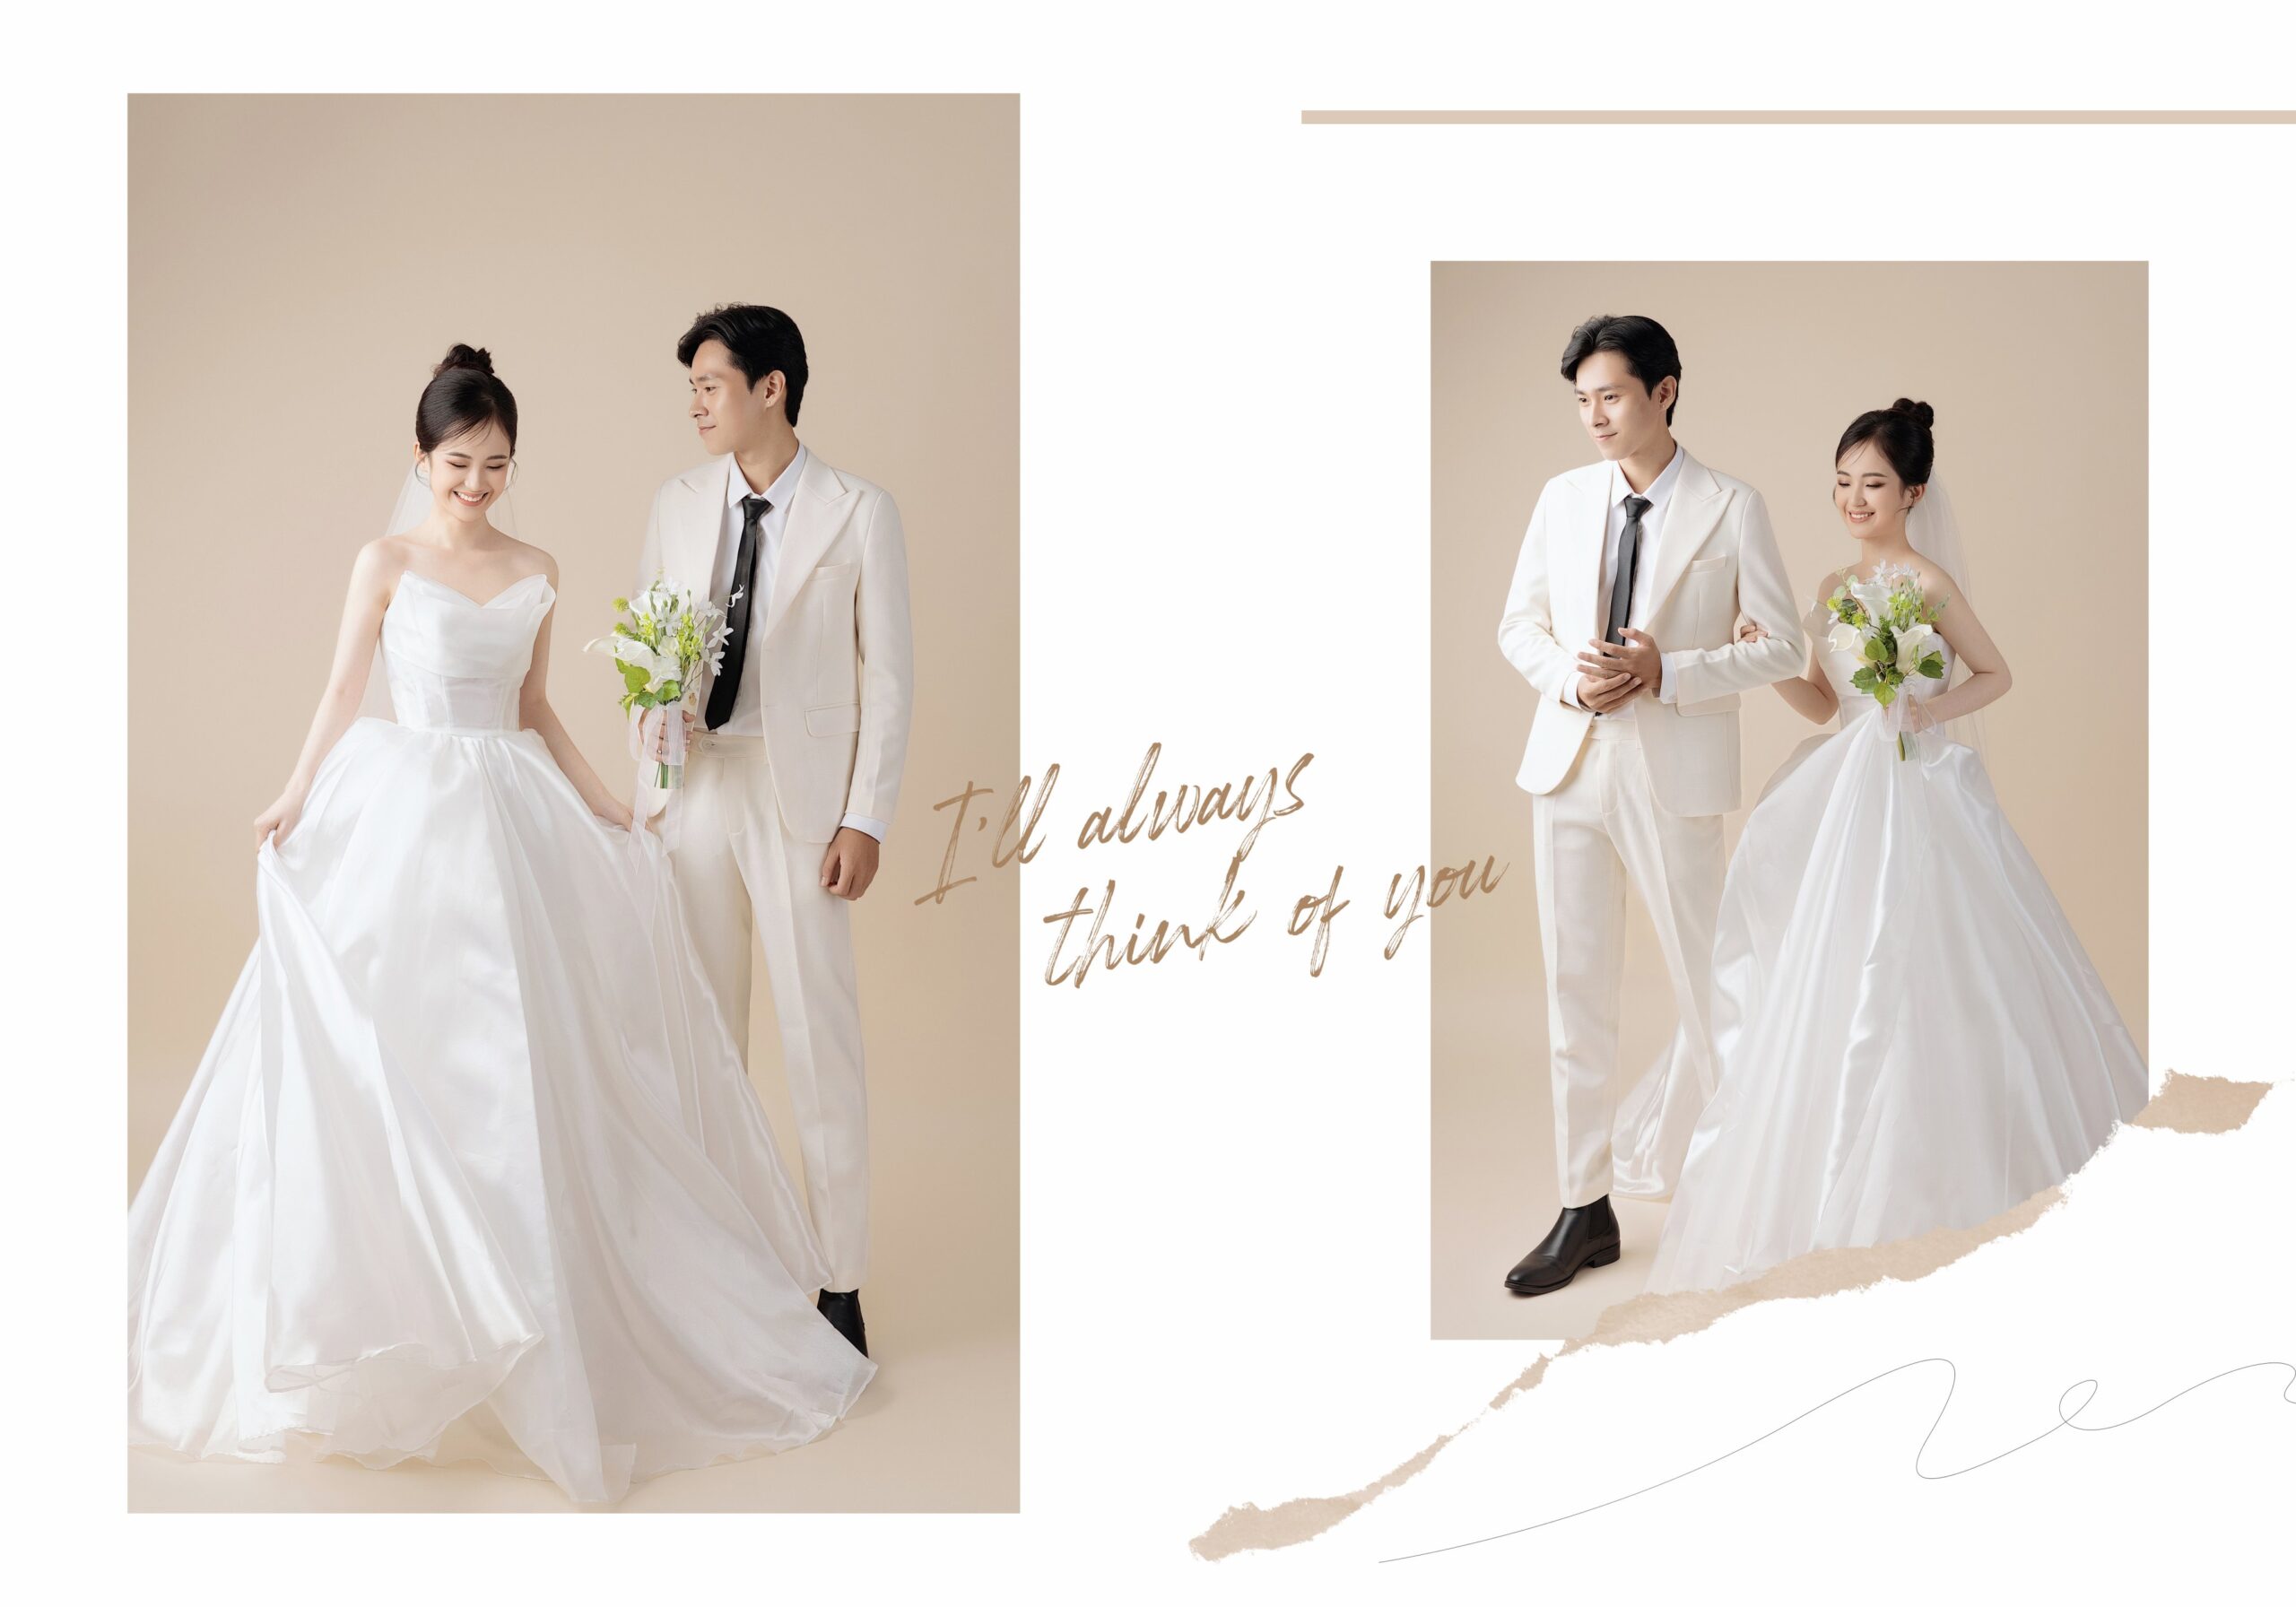 Chụp ảnh cưới tại Studio  Chụp sao cho đẹp  Mai Wedding